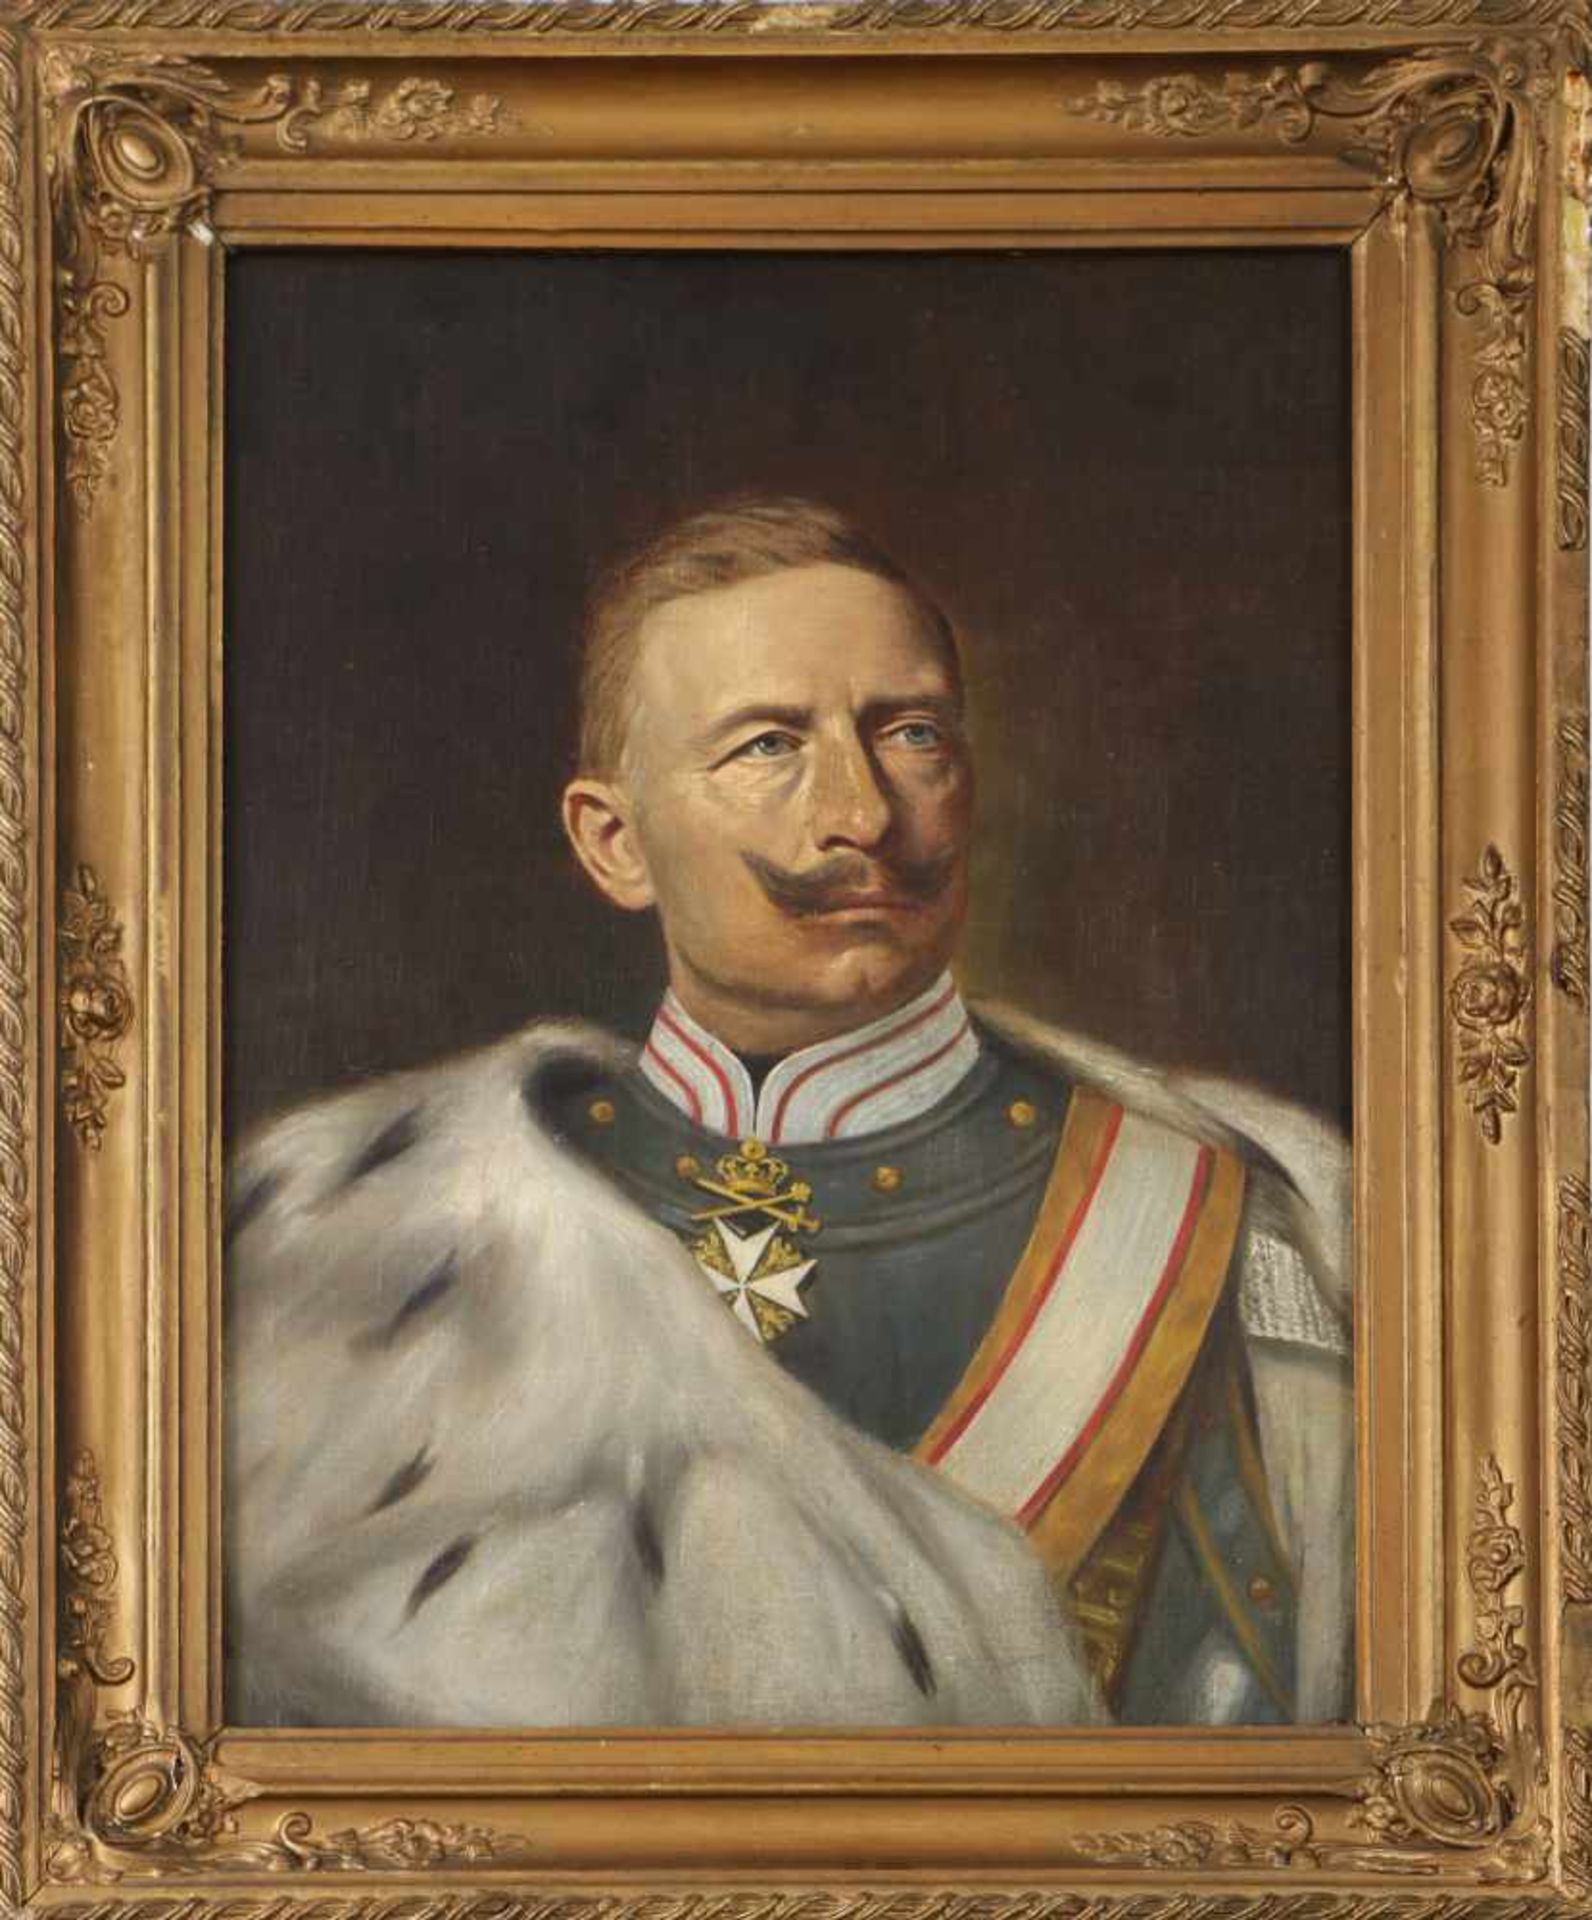 ANONYMÖl auf Leinwand, ¨Porträt Kaiser Wilhelm II.¨, um 1900, aus dem Besitz von Obstl. von